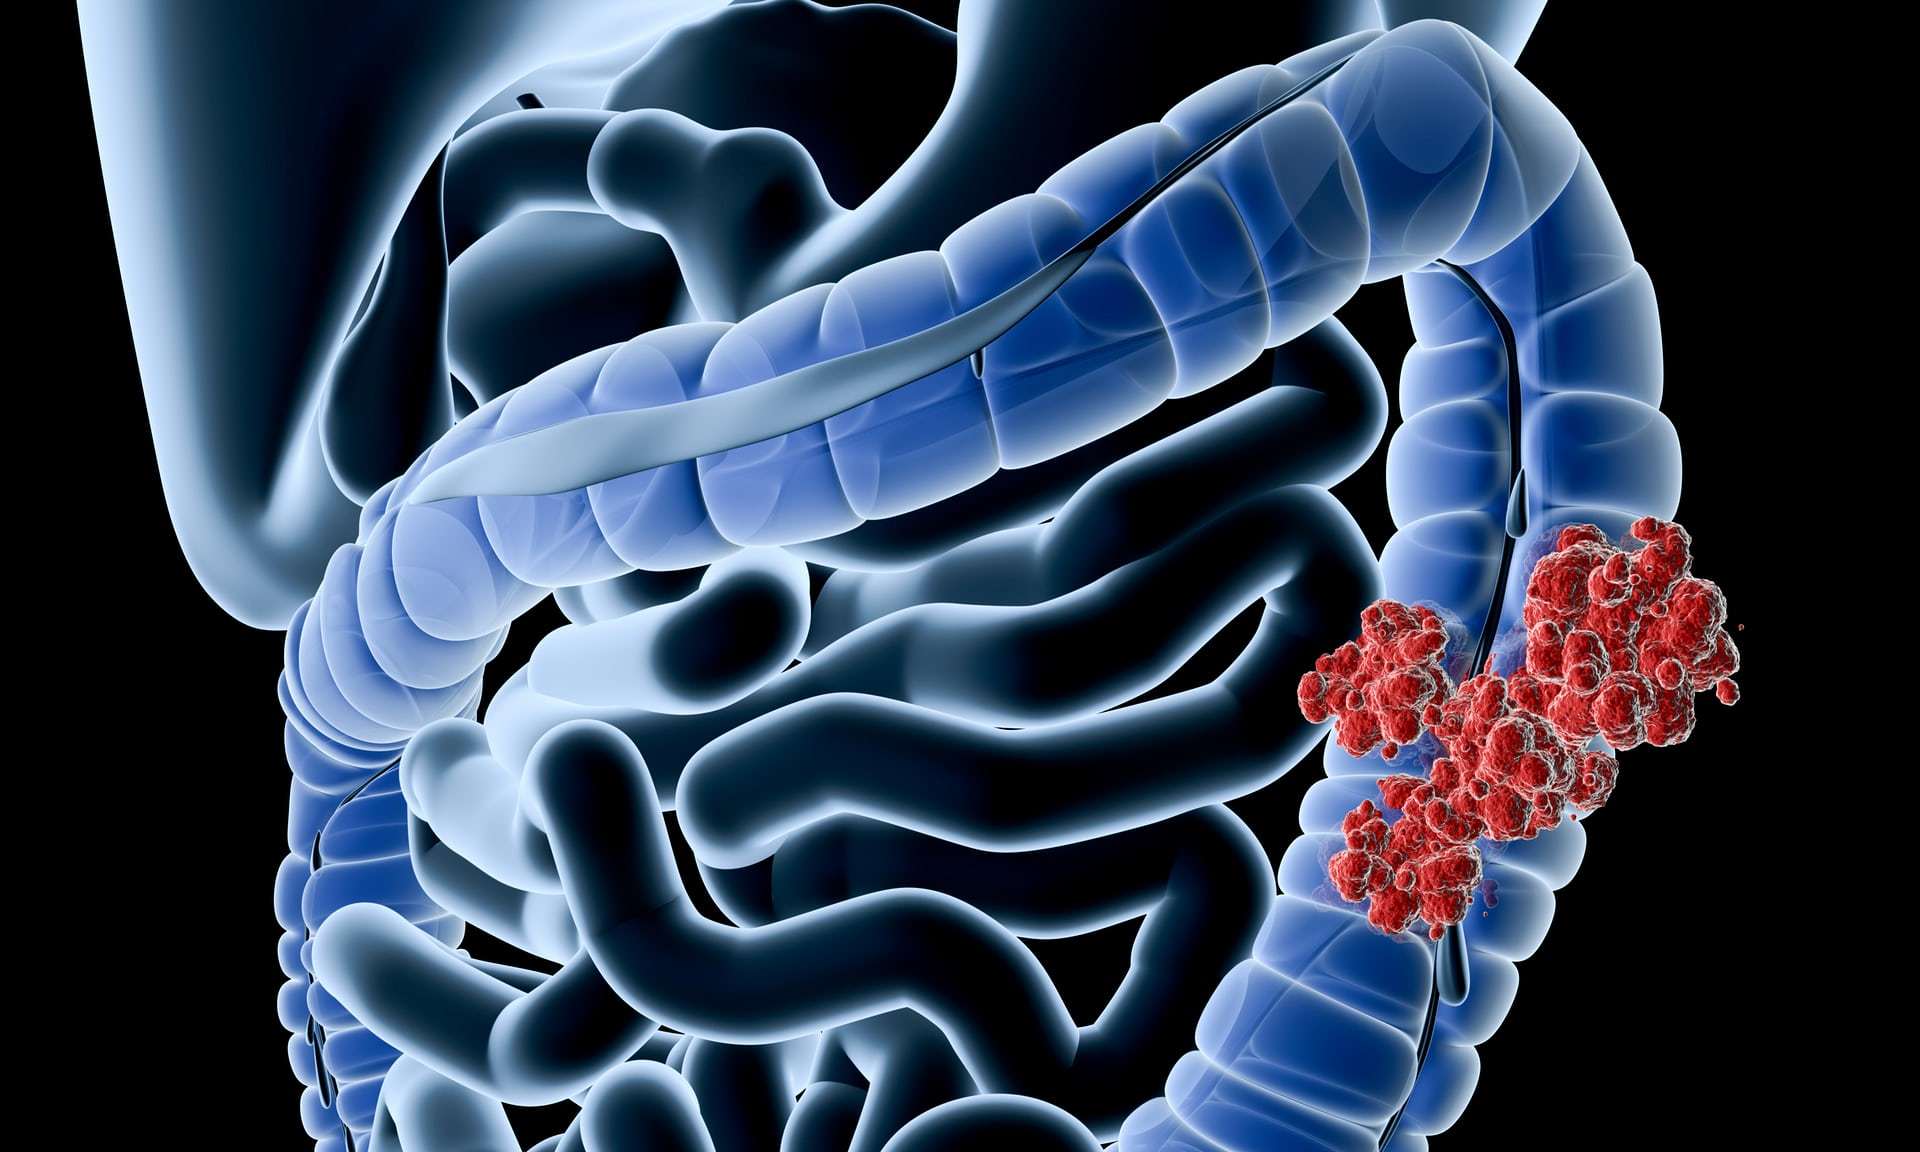 使用类器官了解结直肠癌的机制和进展 - Crown Bioscience